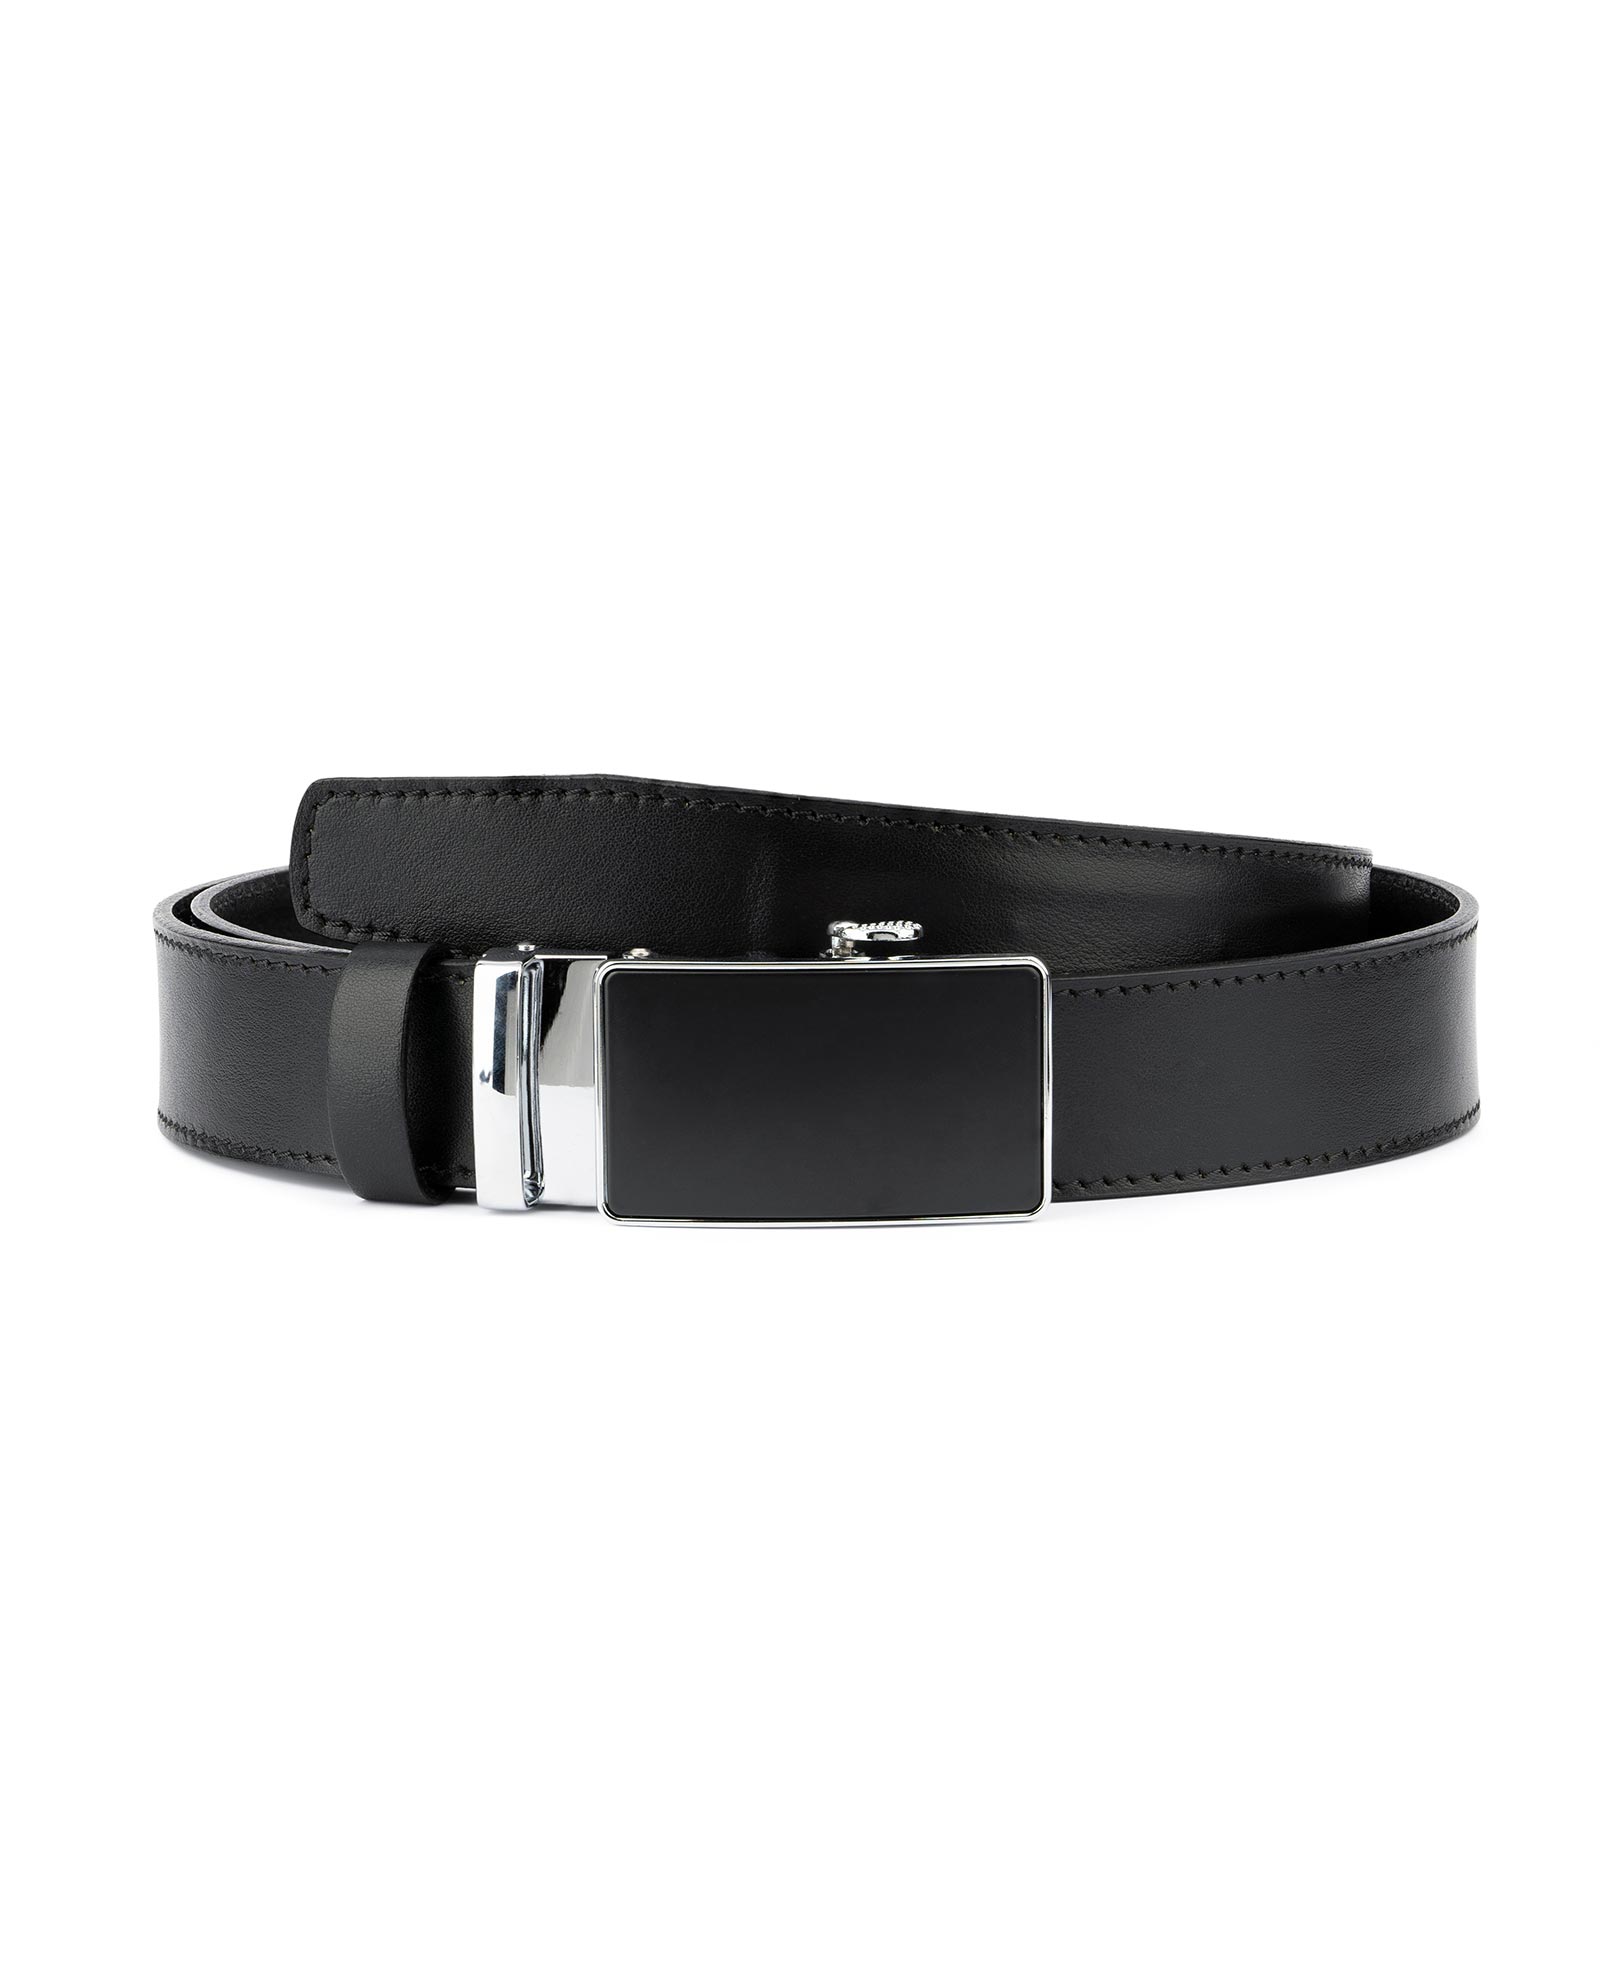 Buy Black Comfort Click Belt | LeatherBeltsOnline.com